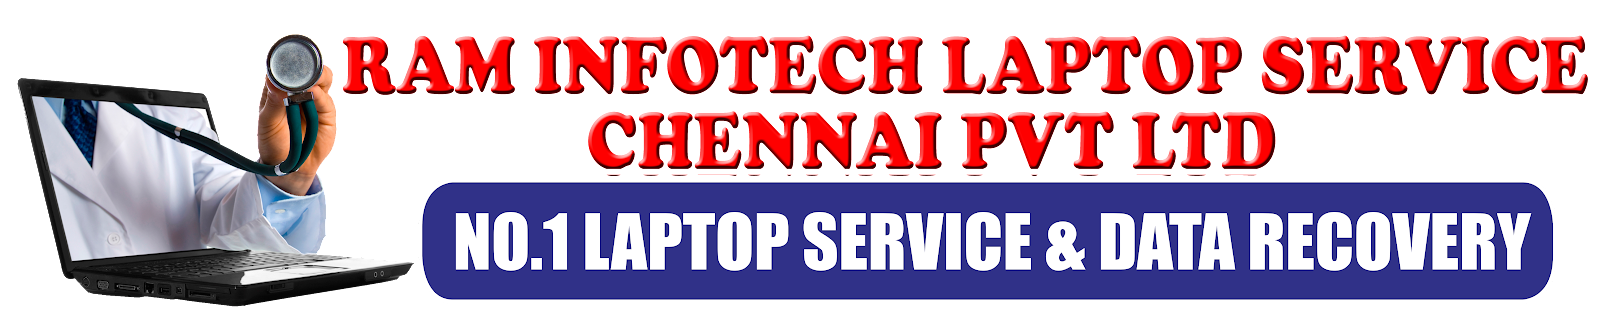 Raminfotech Laptop Service Chennai Pvt Ltd -Guduvanchery- laptop service center guduvanchery